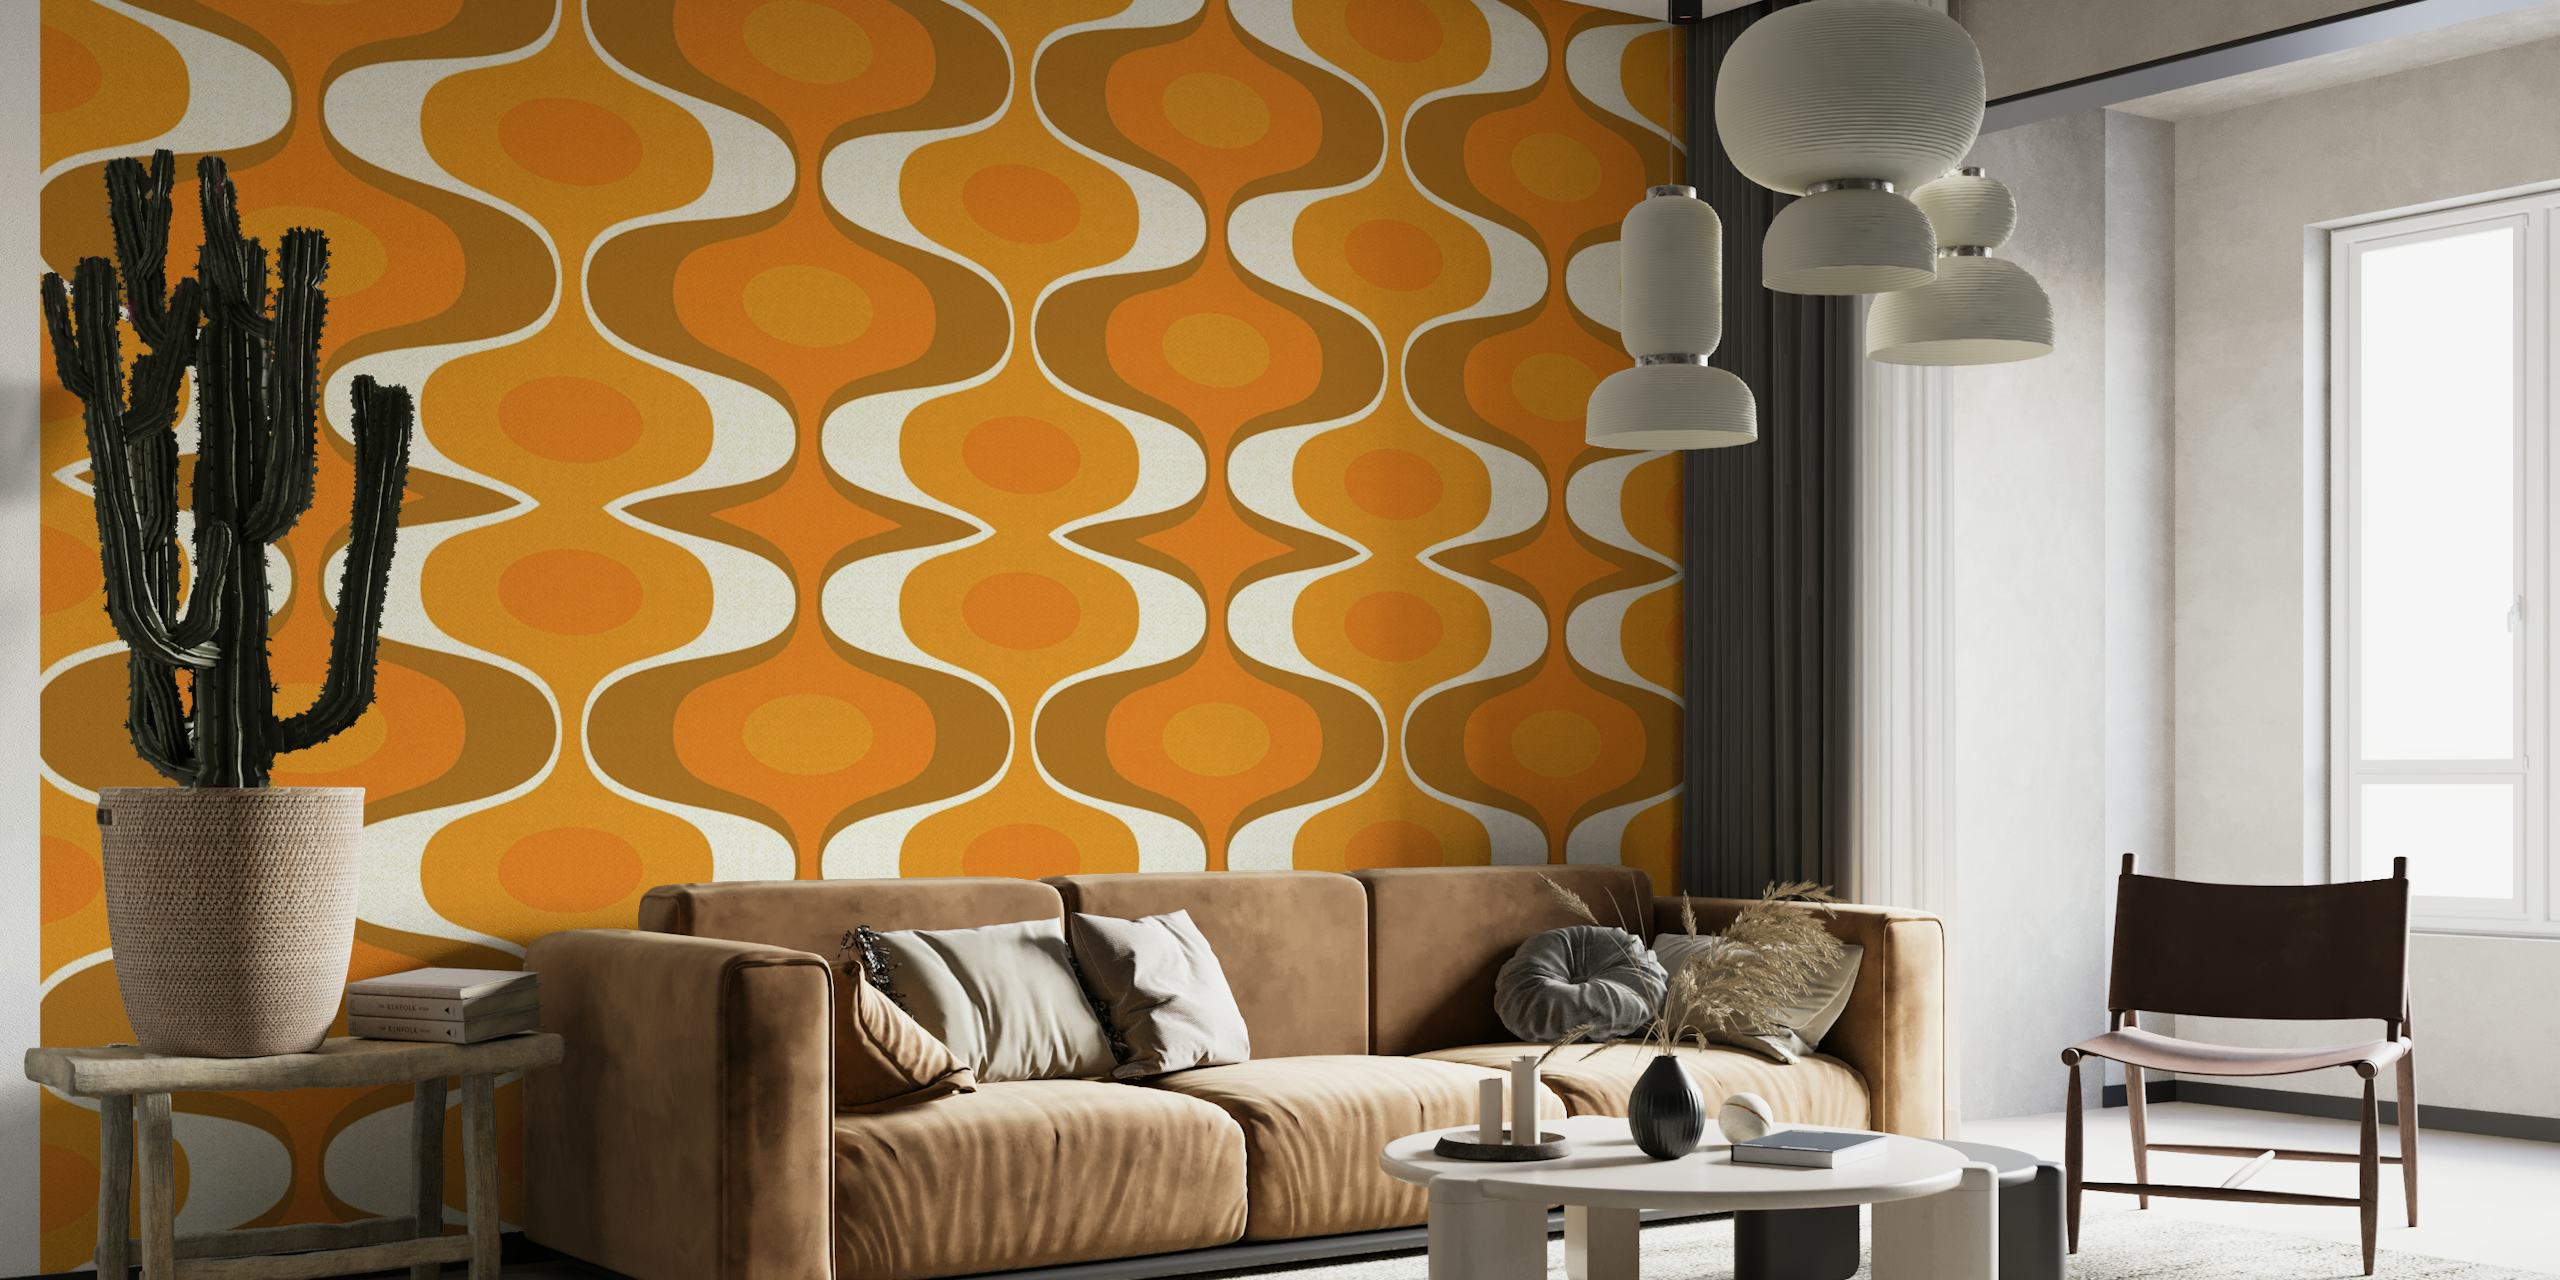 Geometrinen kuviollinen seinämaalaus oransseilla ja maanläheisillä sävyillä heijastaen 70-luvun retrotyyliä